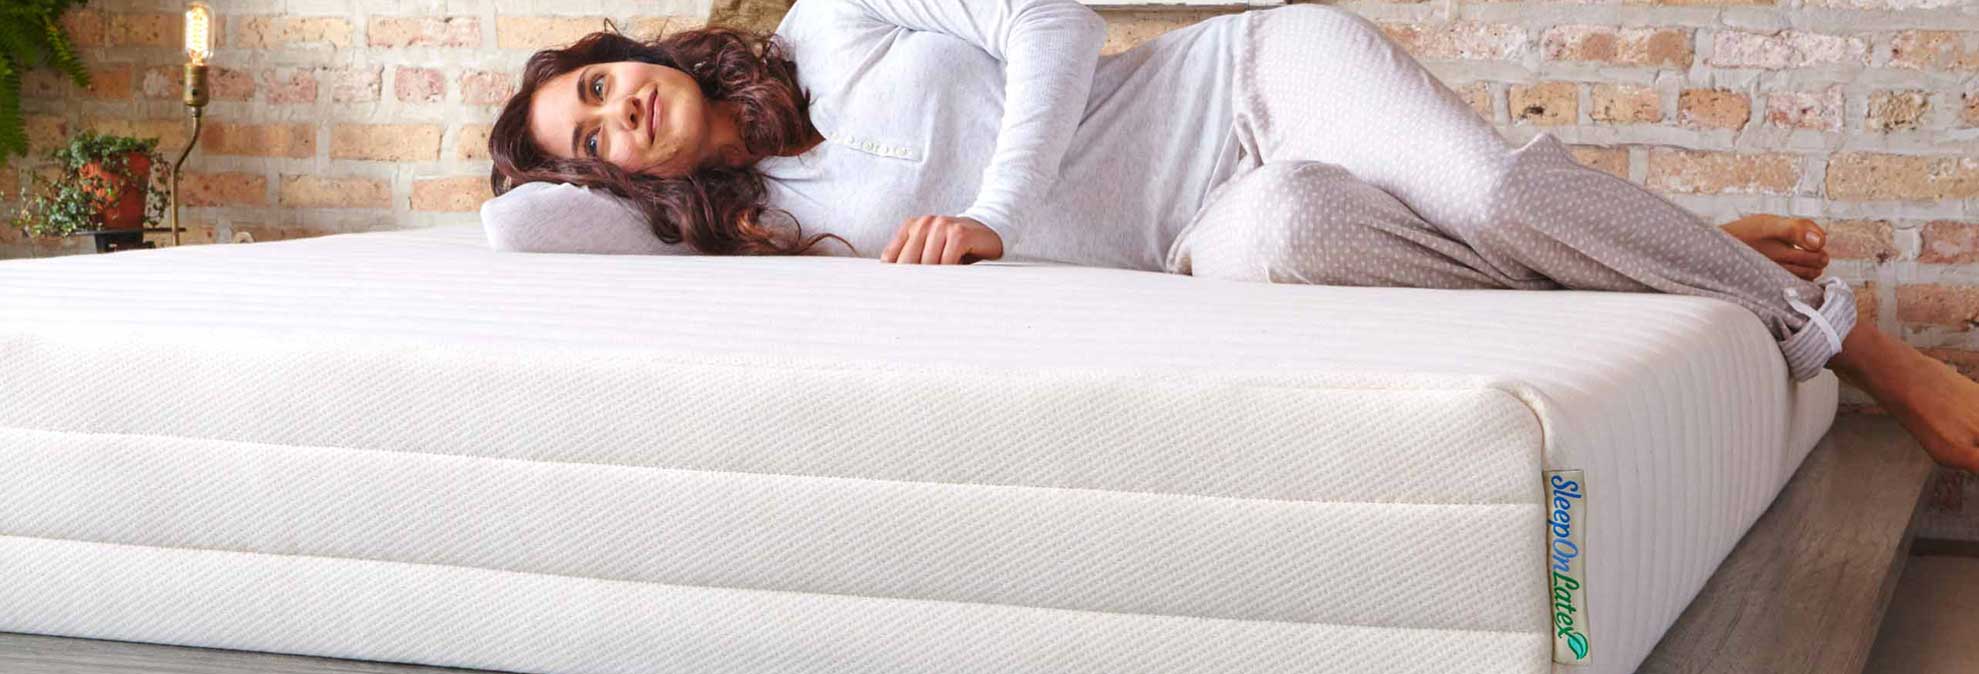 best queen mattress warmer consumer reports